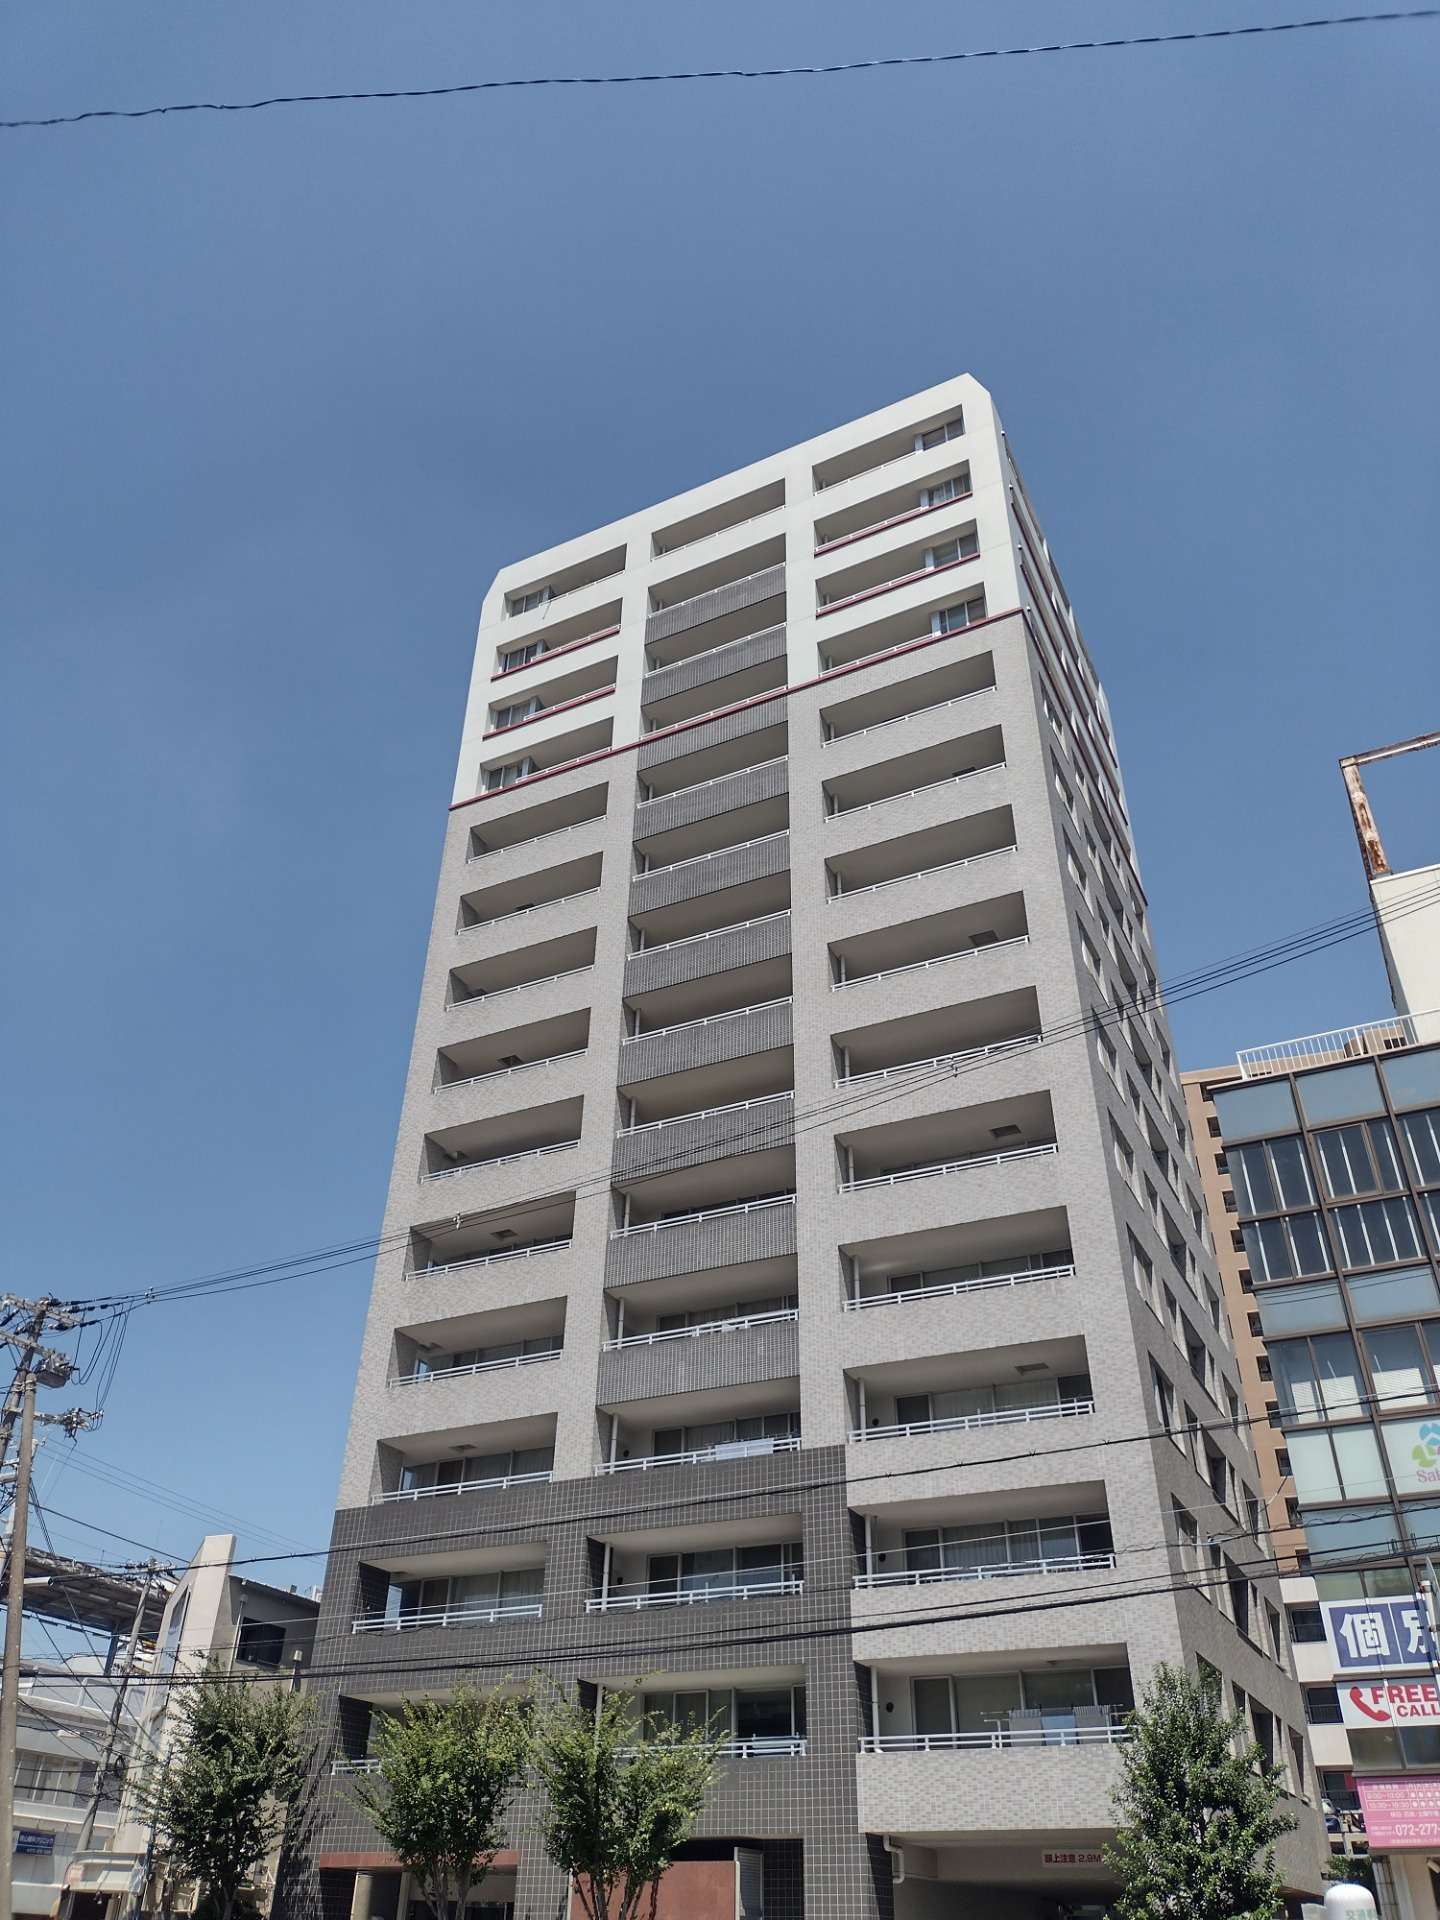 【堺市中区のマンションを売る】堺市中区のマンション売却査定はオペタホーム